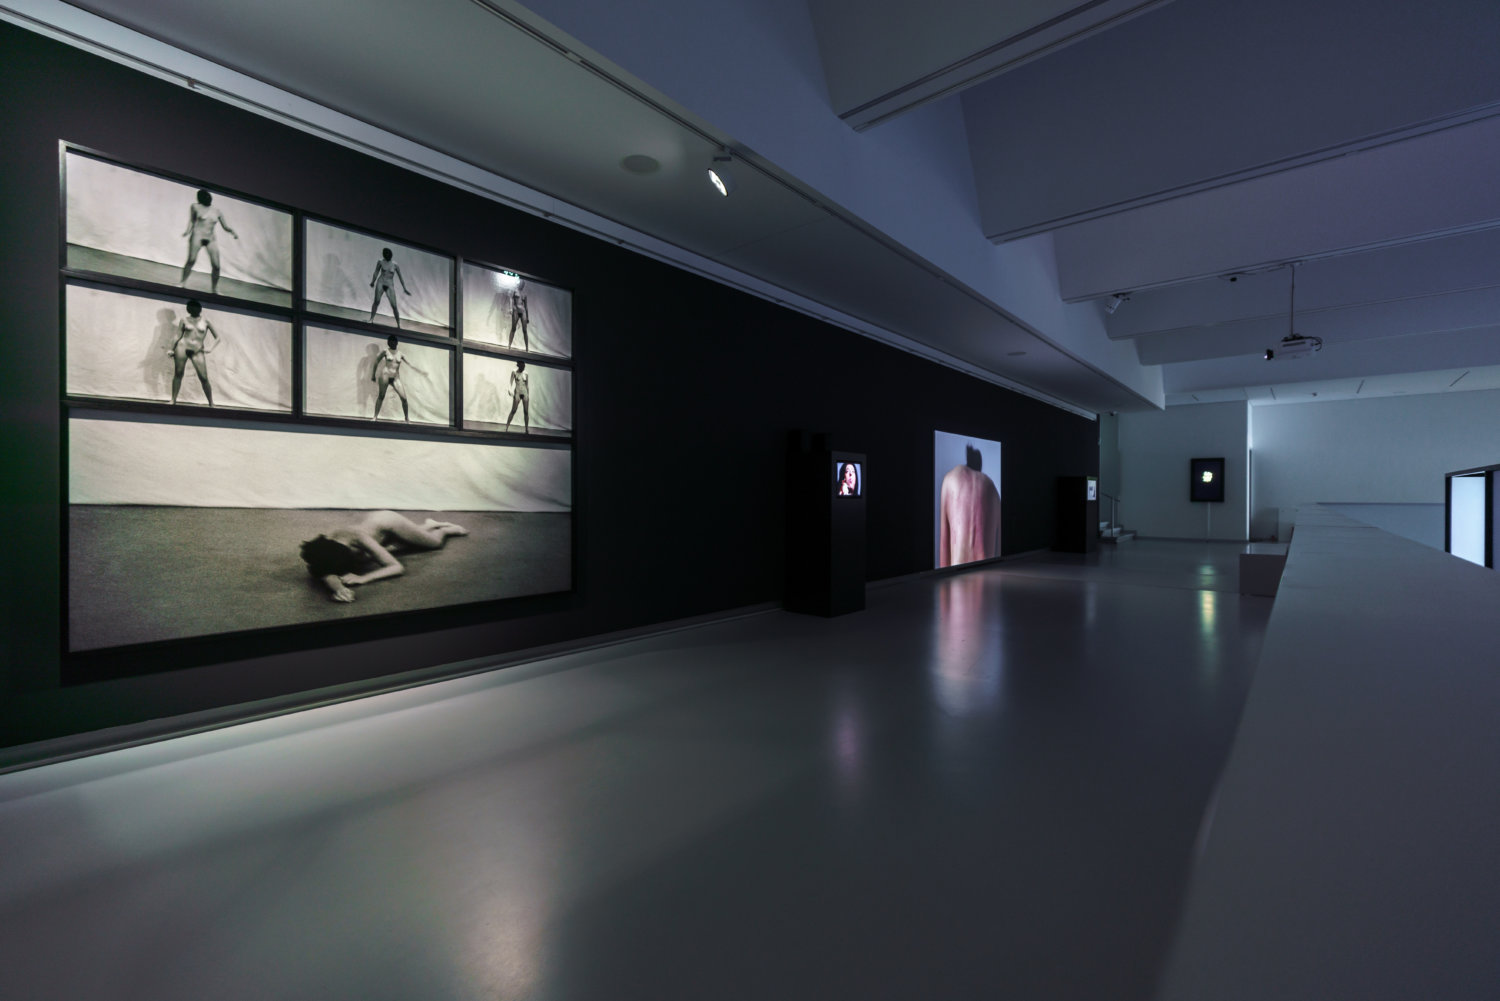 Ausstellungsansicht der Kunsthalle Tübingen, der Raum ist dunkel und es sind Performance-Videos der Künstlerin Marina Abramovic zu sehen. Im Vordergrund sieht man verschiedene Videos, wo sie nackt tanzt und zu Boden fällt, im Hintergrund sieht man ihren roten, nackten Rücken